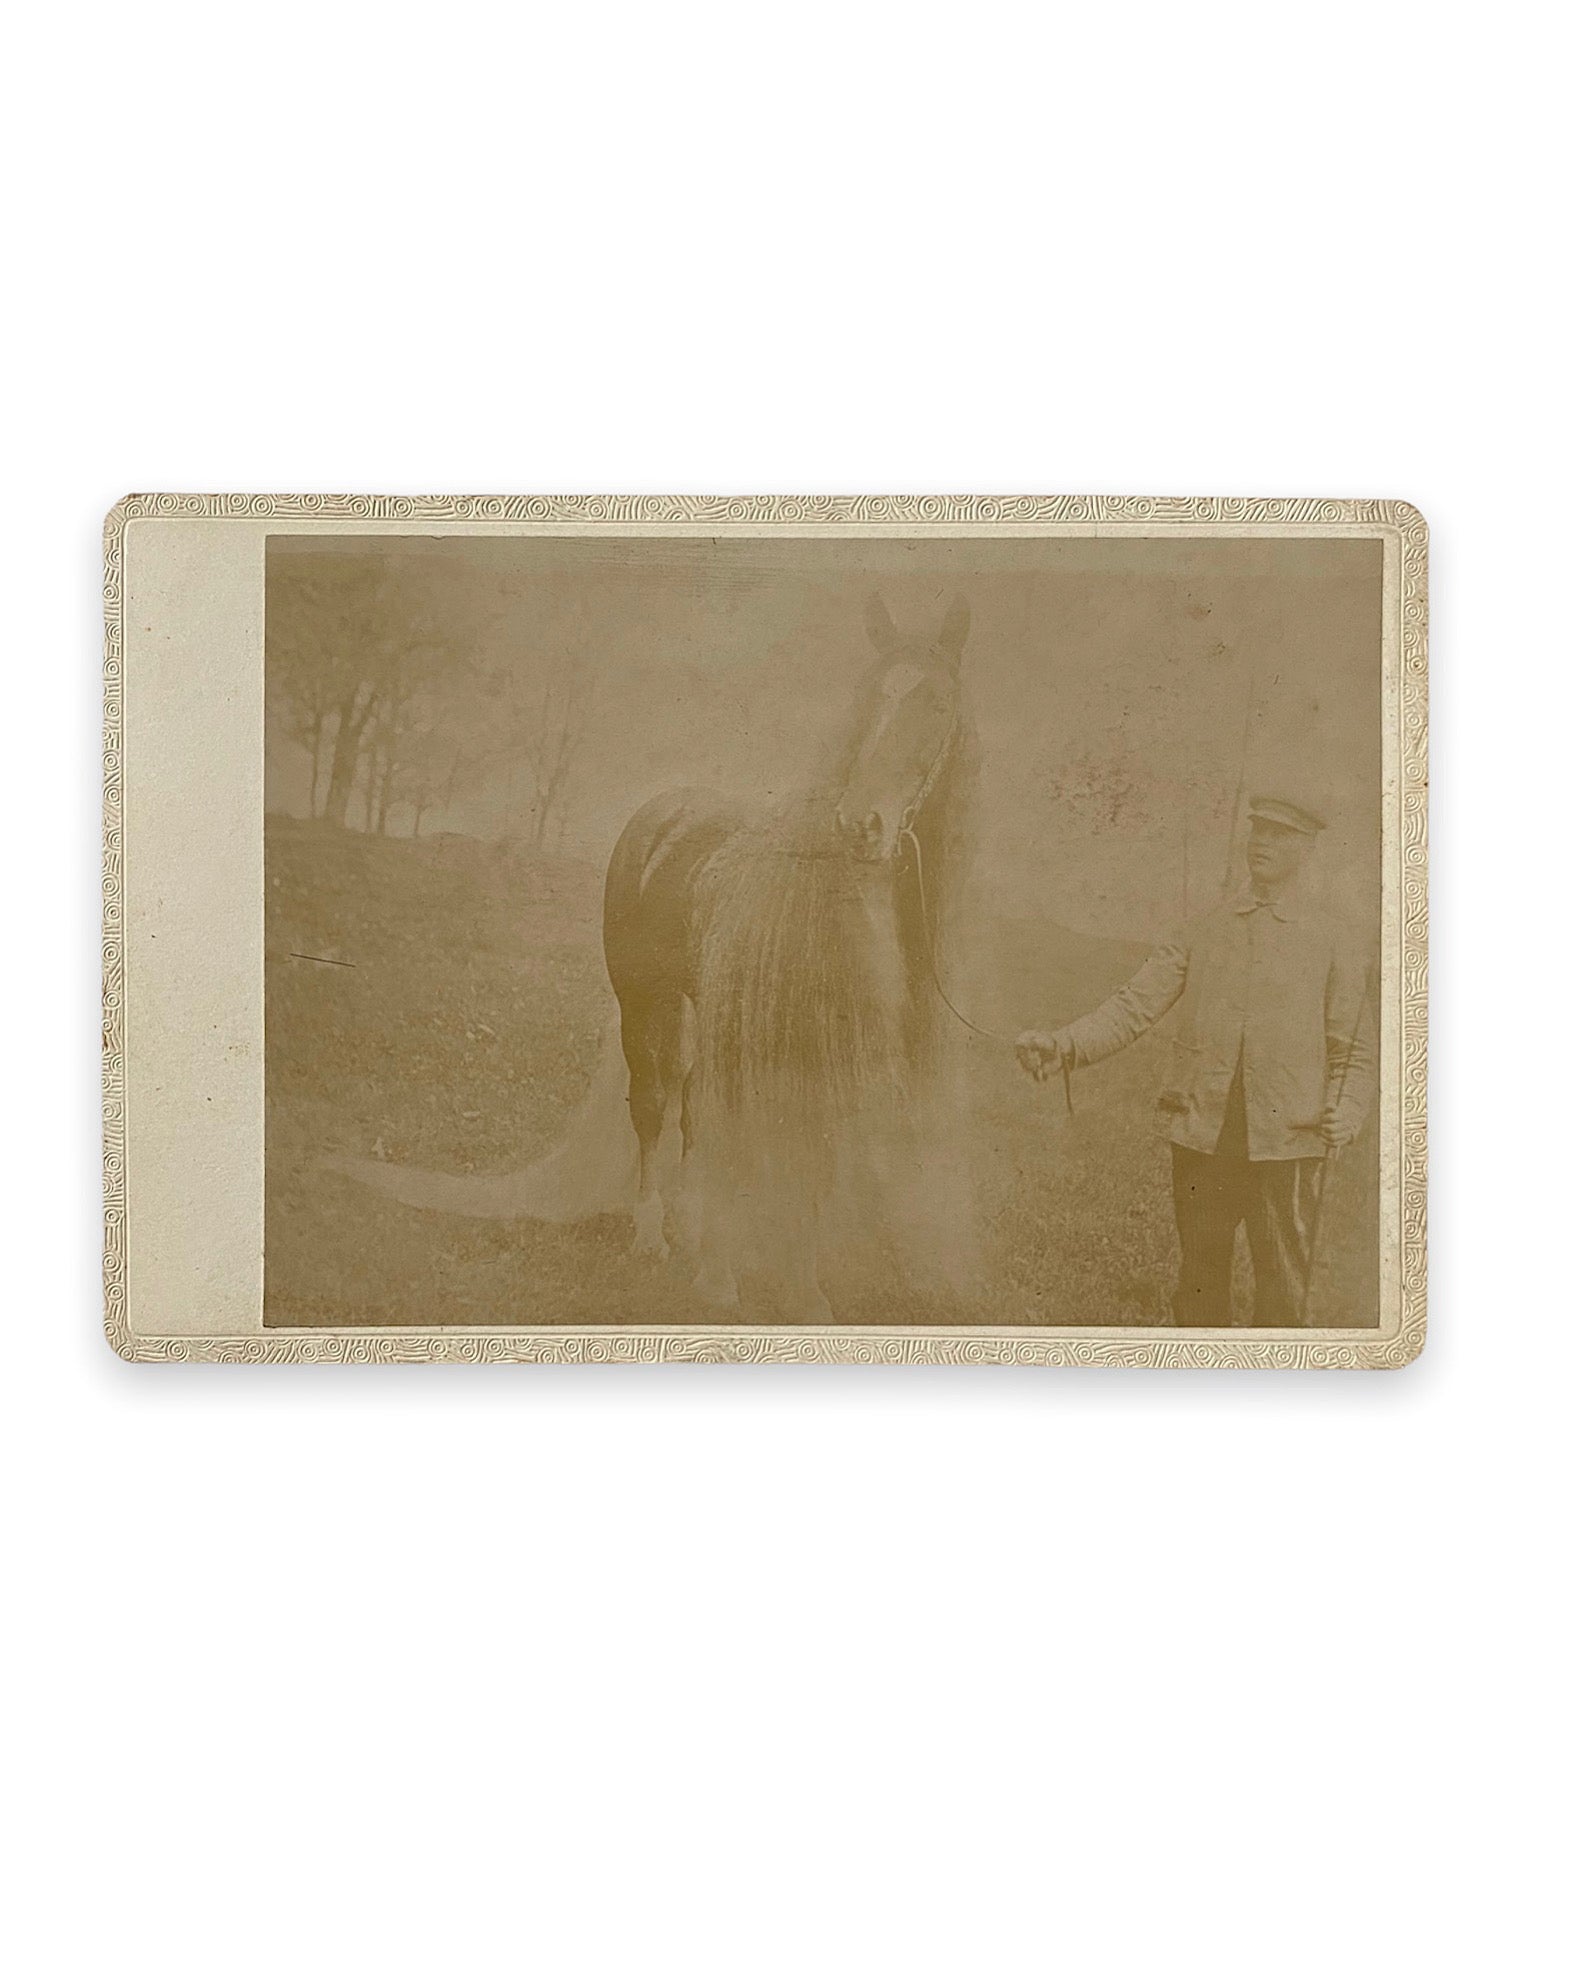 Oregon Wonder Horse Cabinet Card